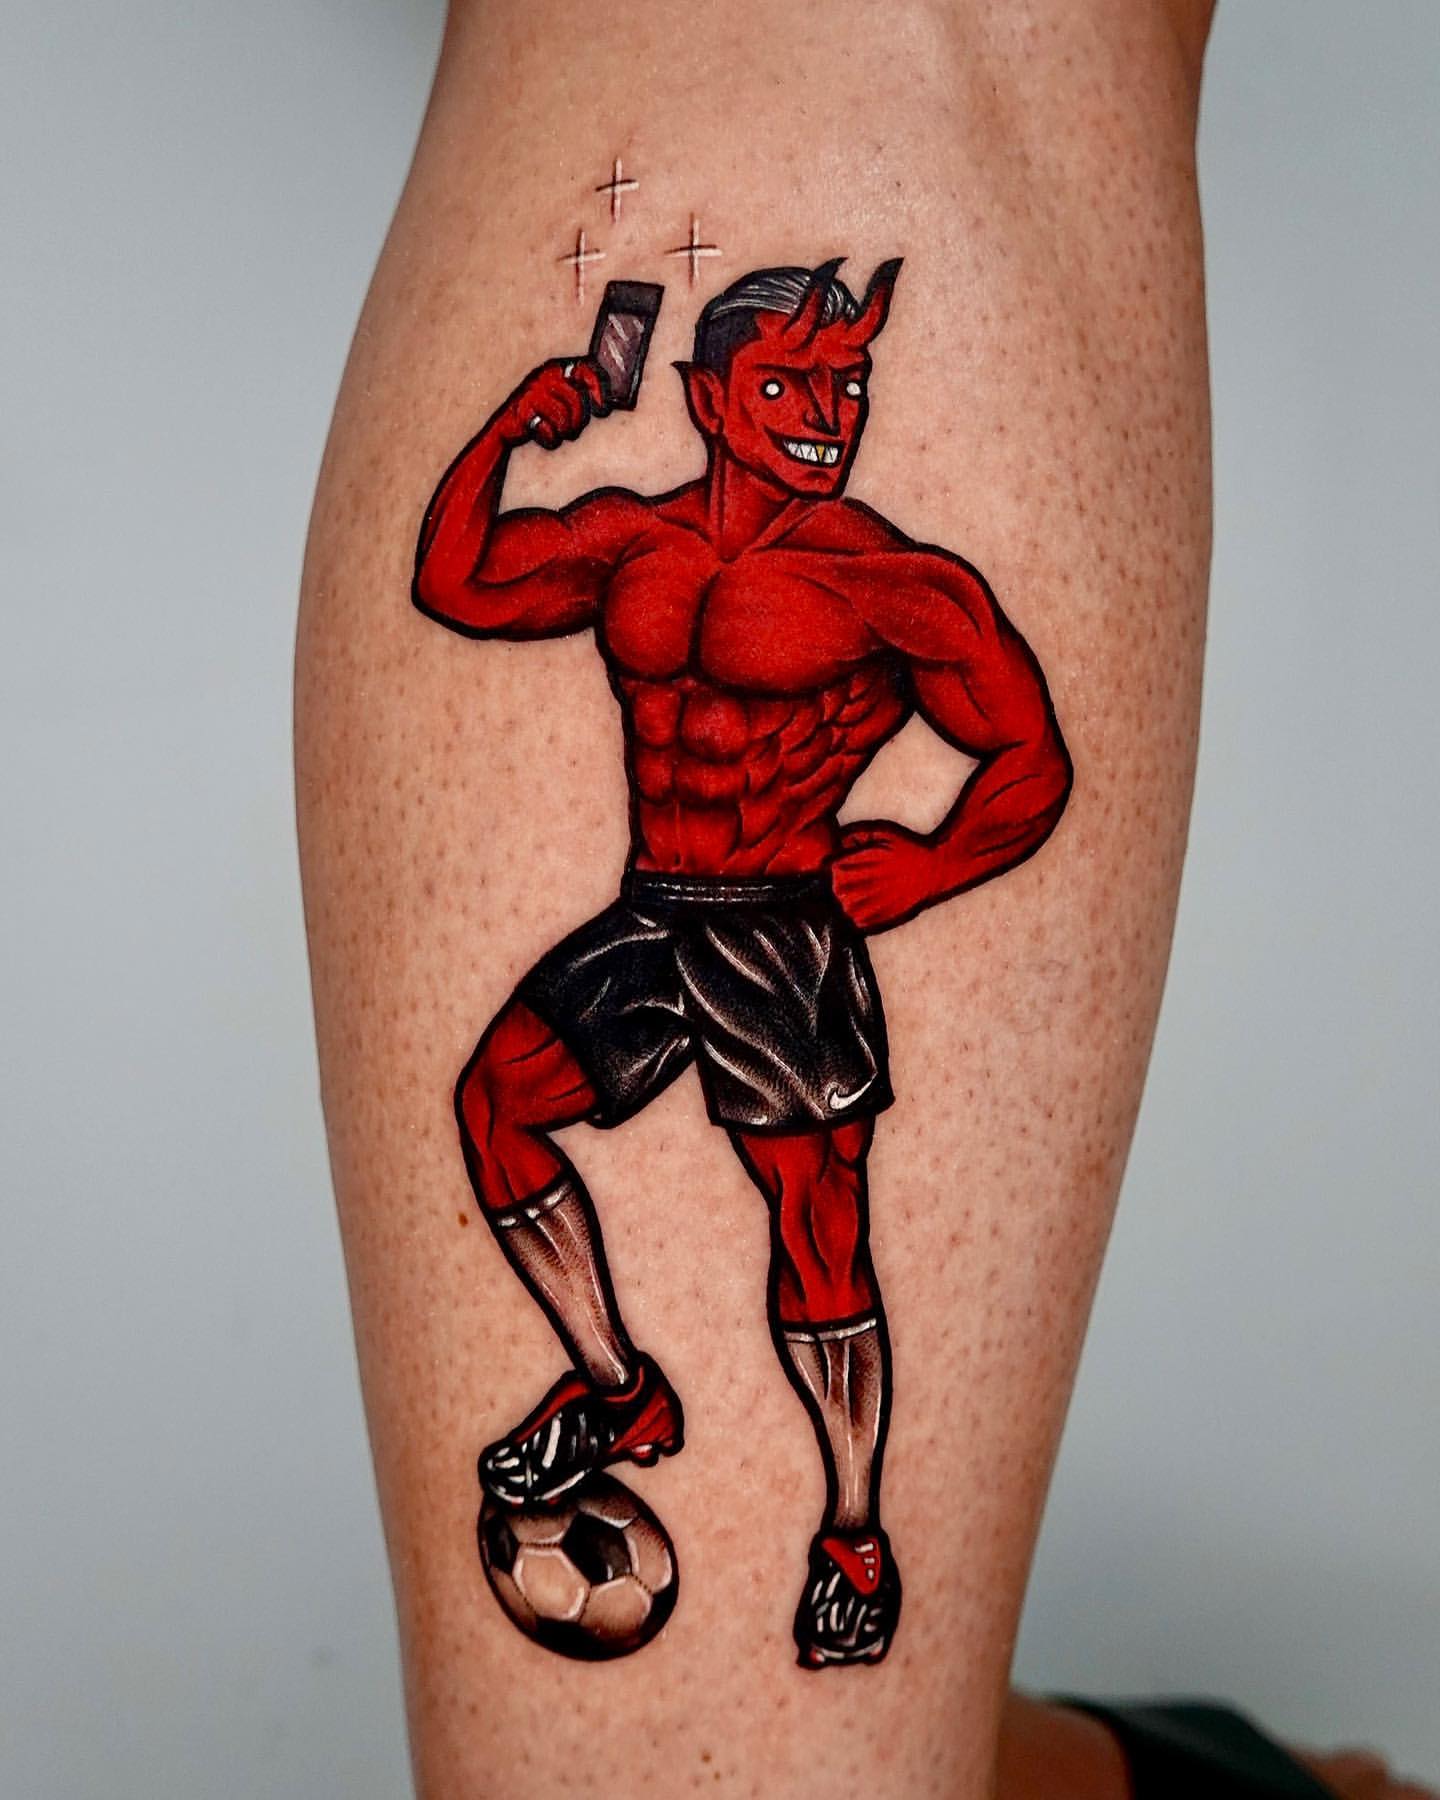 Full Leg Tattoos 2022 - Leg Tattoos for Men 